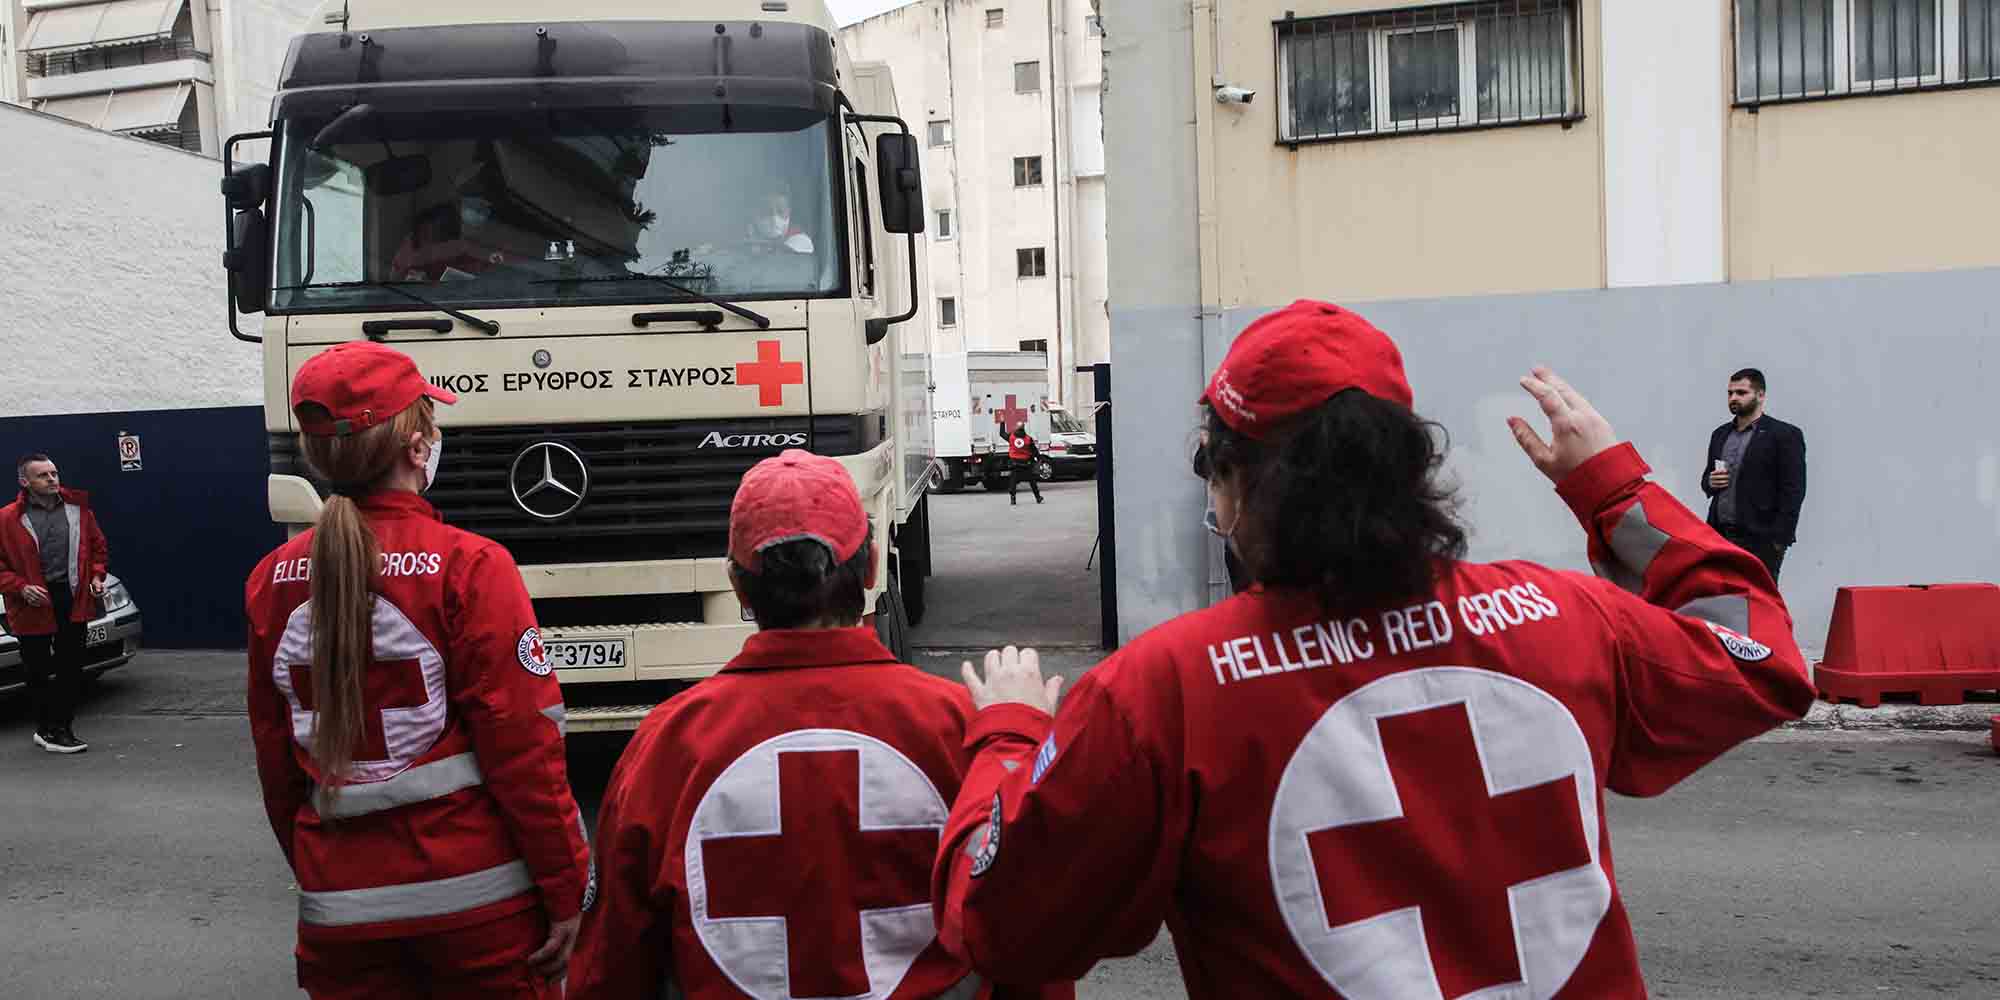 Αποστολή νέας ανθρωπιστικής βοήθειας από τον Ελληνικό Ερυθρό Σταυρό στην Ουκρανία